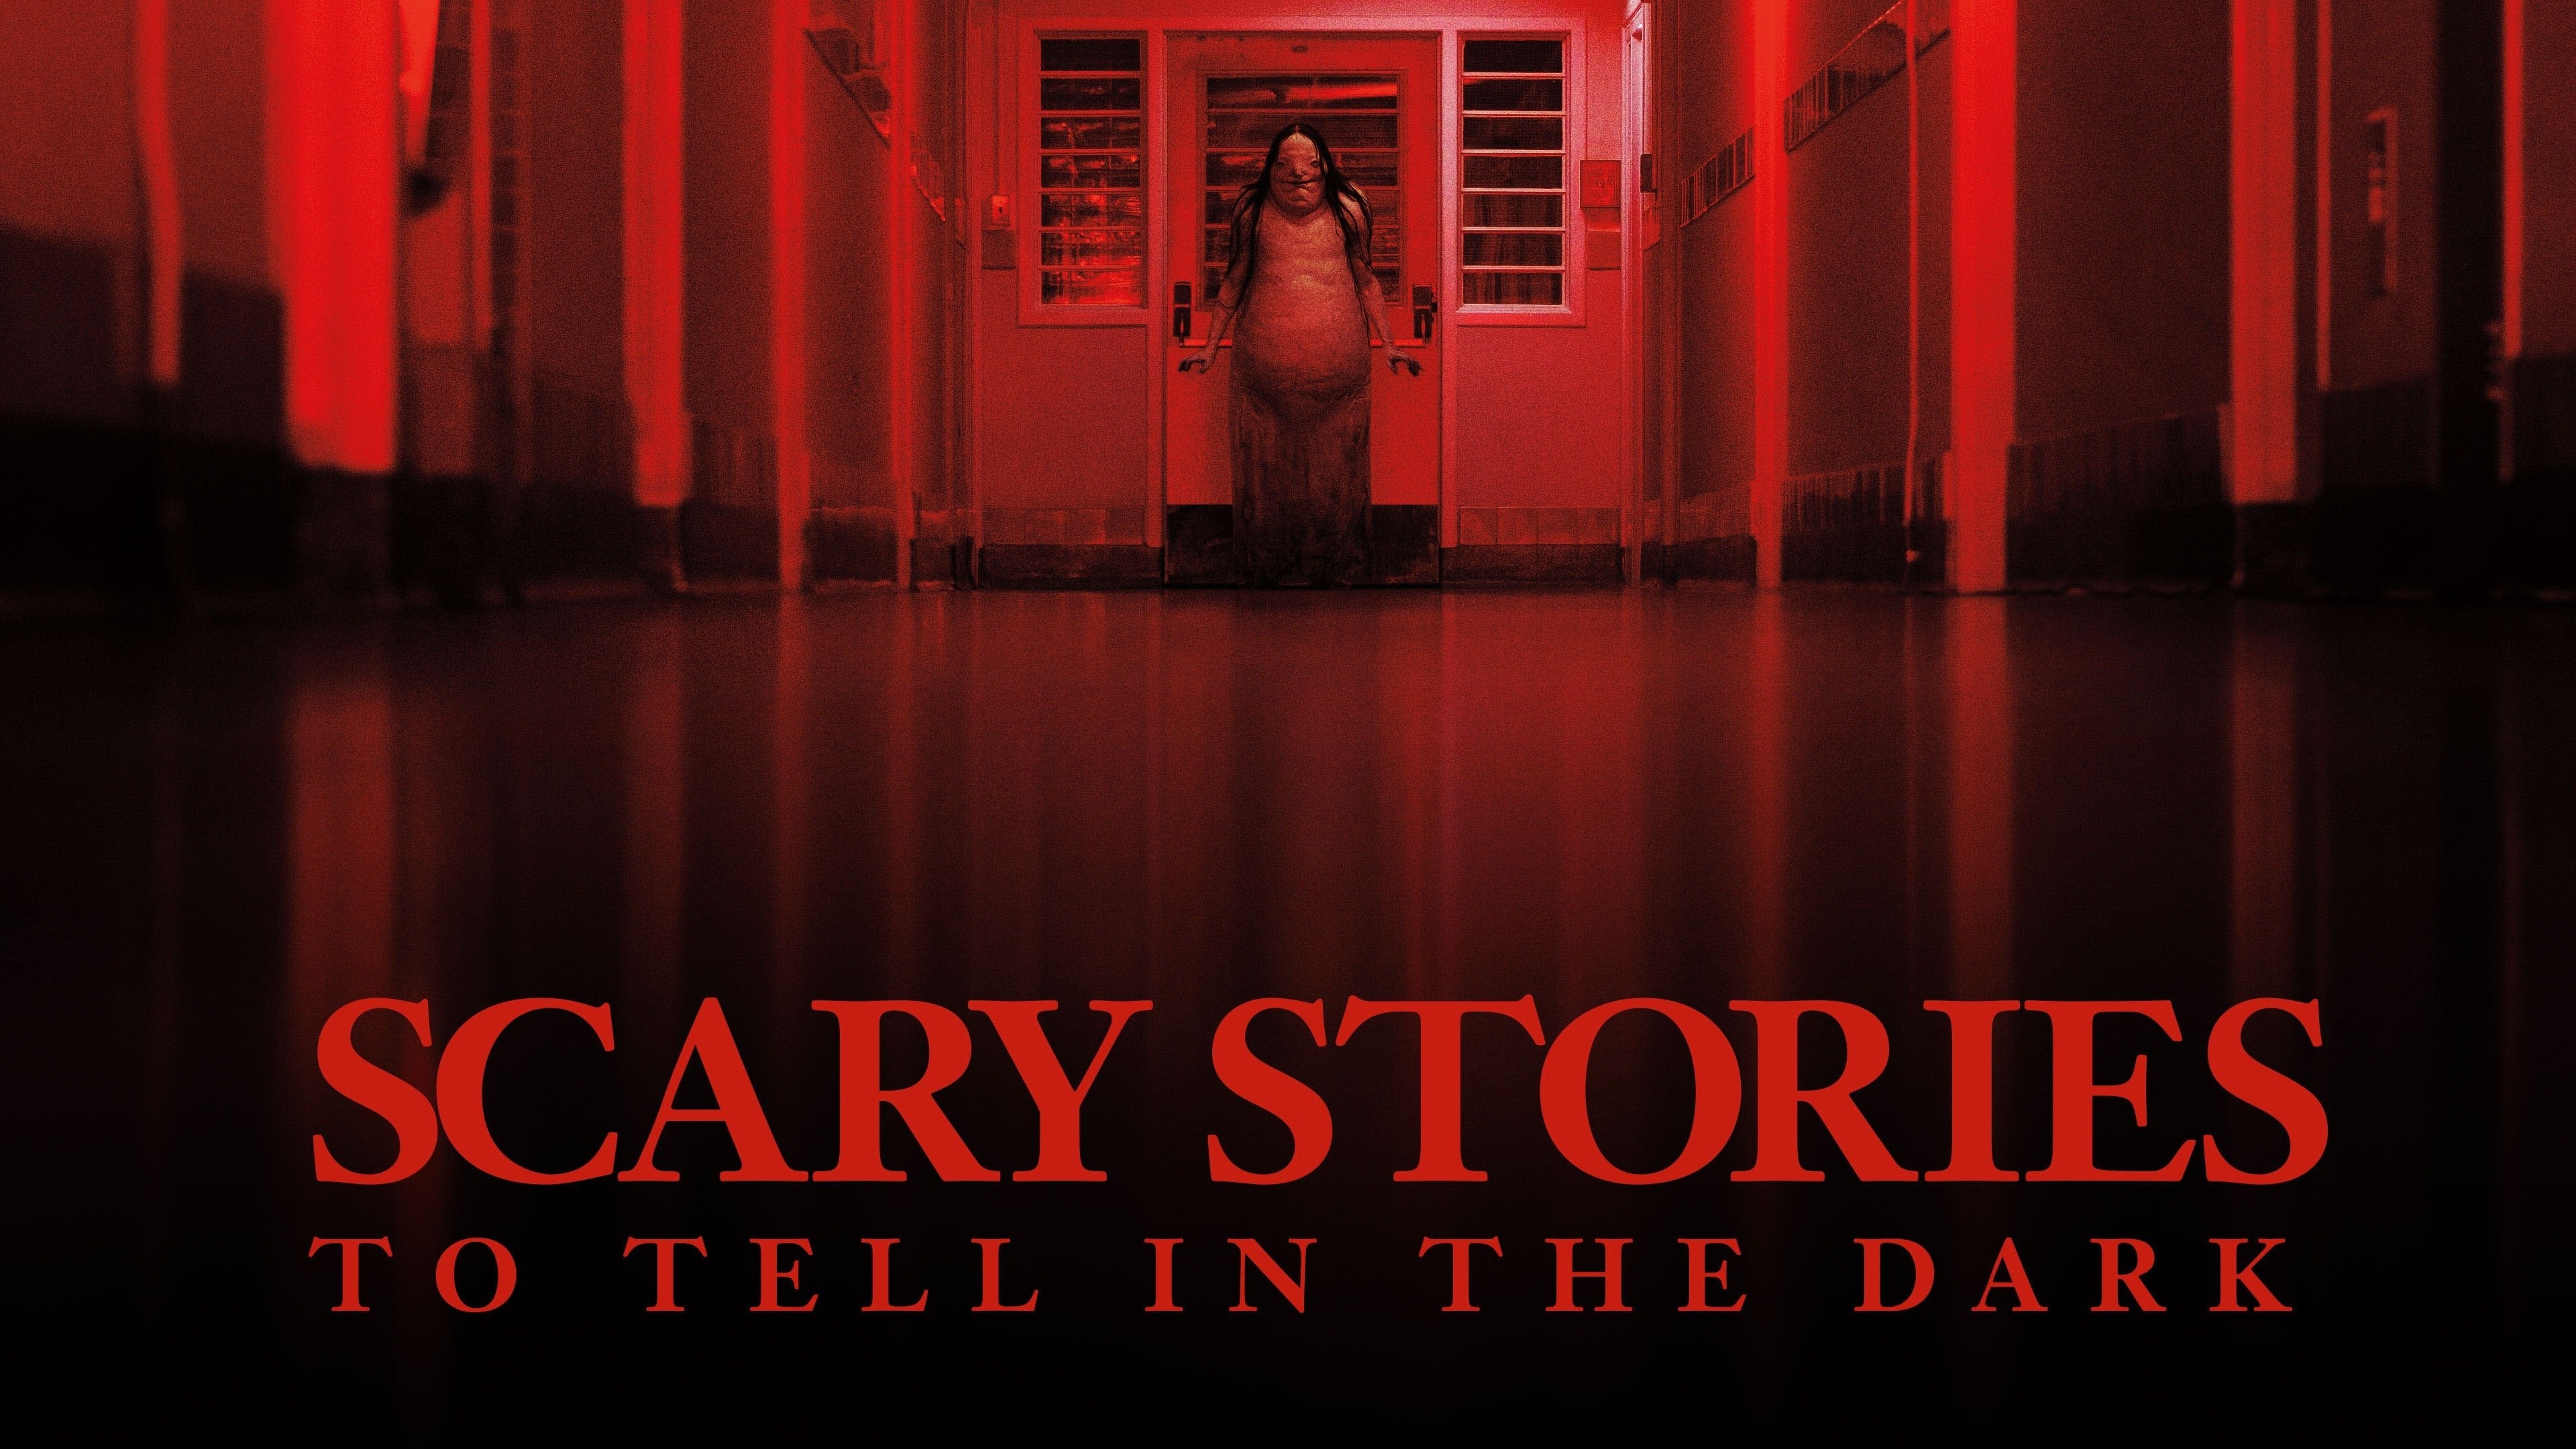 Scary story to tell. Страшные истории для рассказа в темноте 2019. Страшные истории для рассказа в темноте 2019 красная комната.